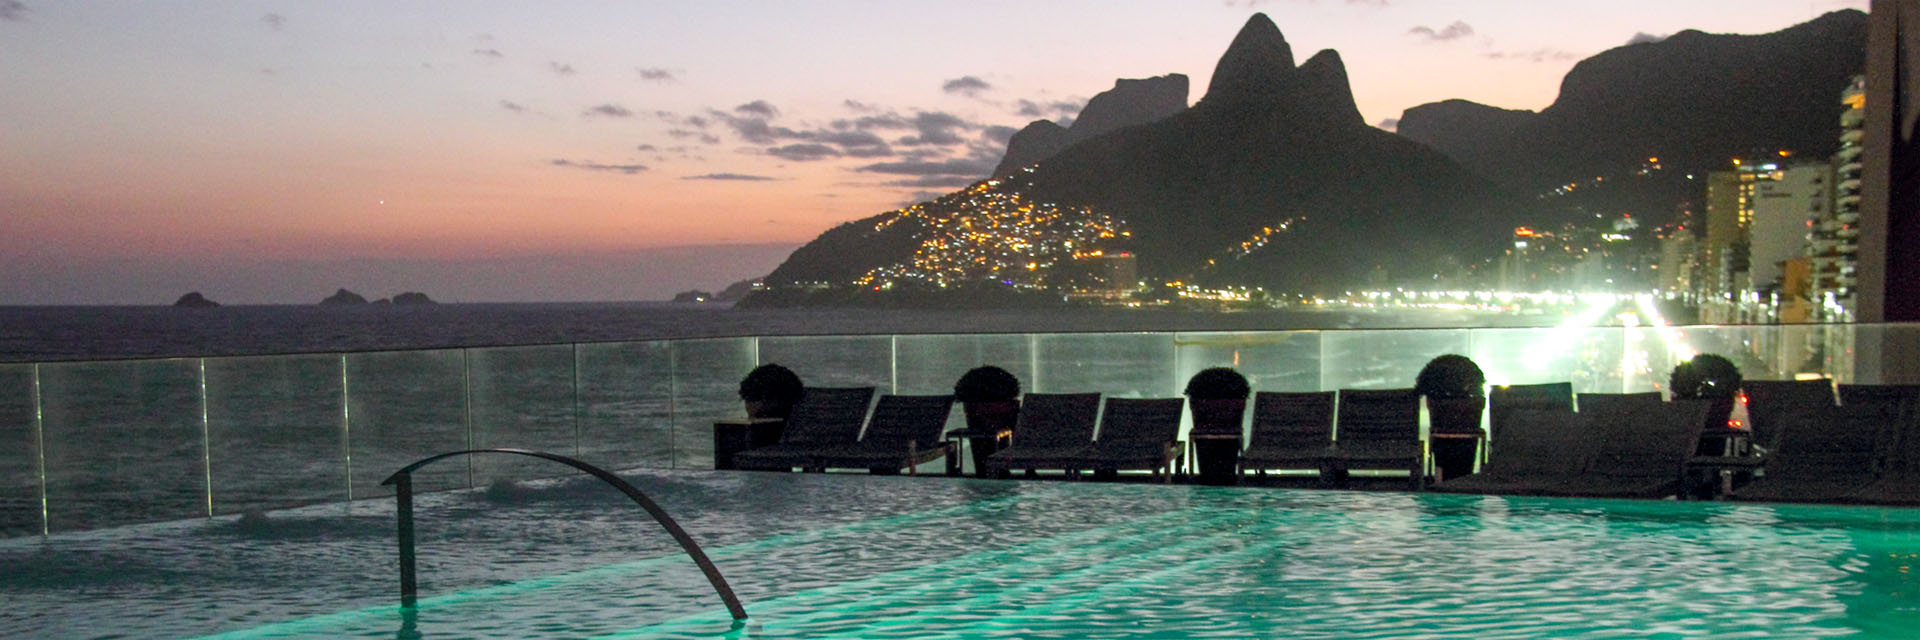 Onde ficar no Rio de Janeiro